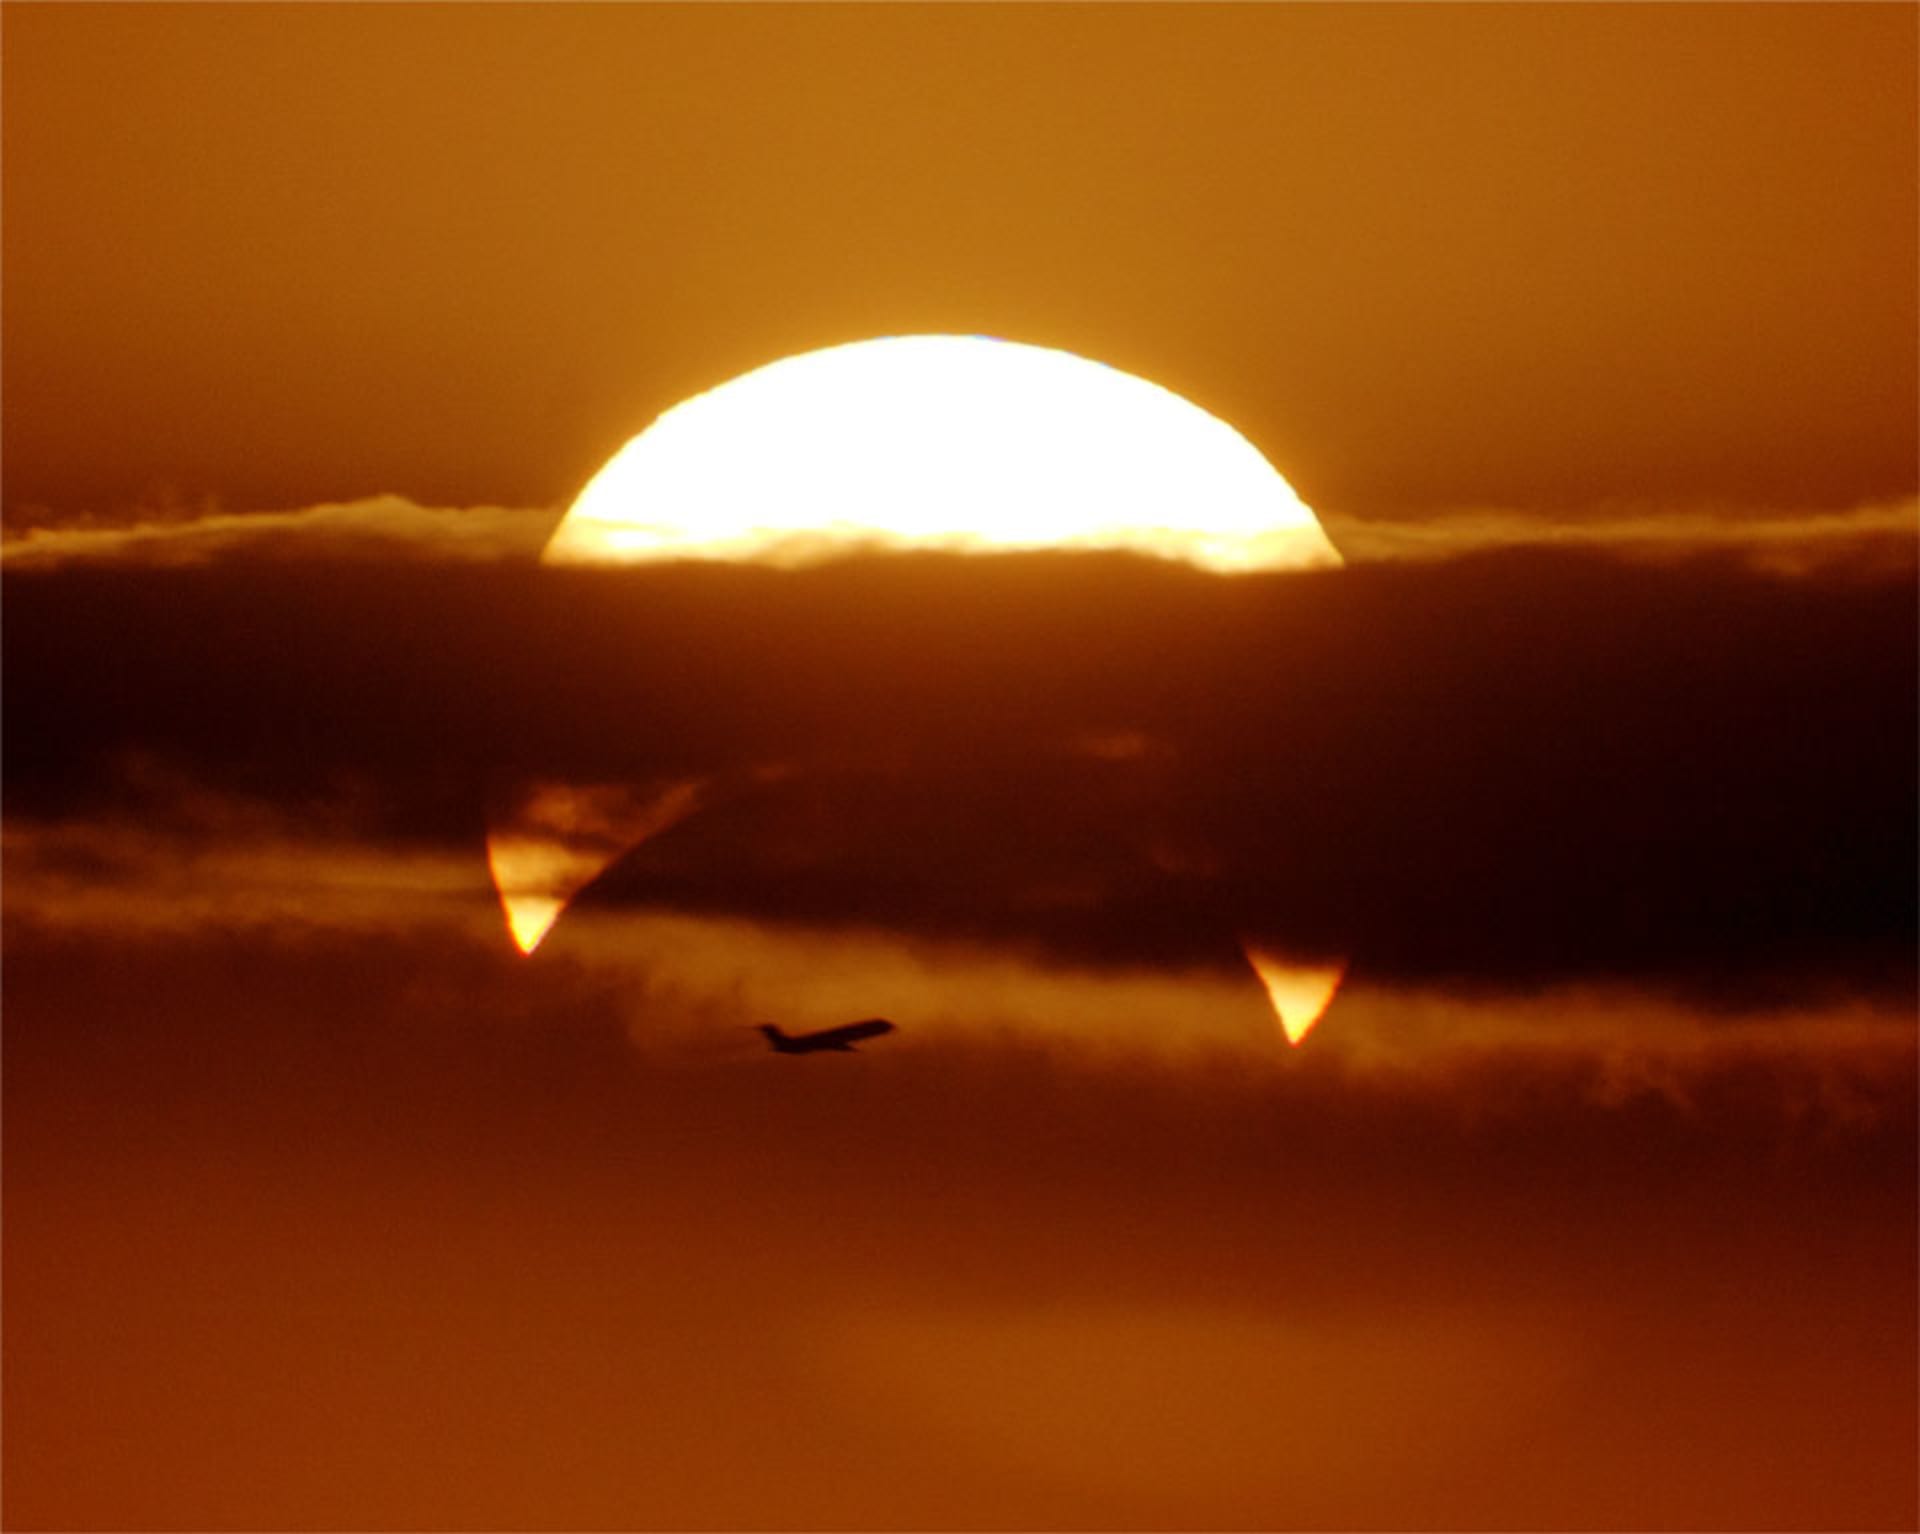 Částečné zatmění Slunce pozorované v Austrálii v roce 2013. Autor Phillip Calais.